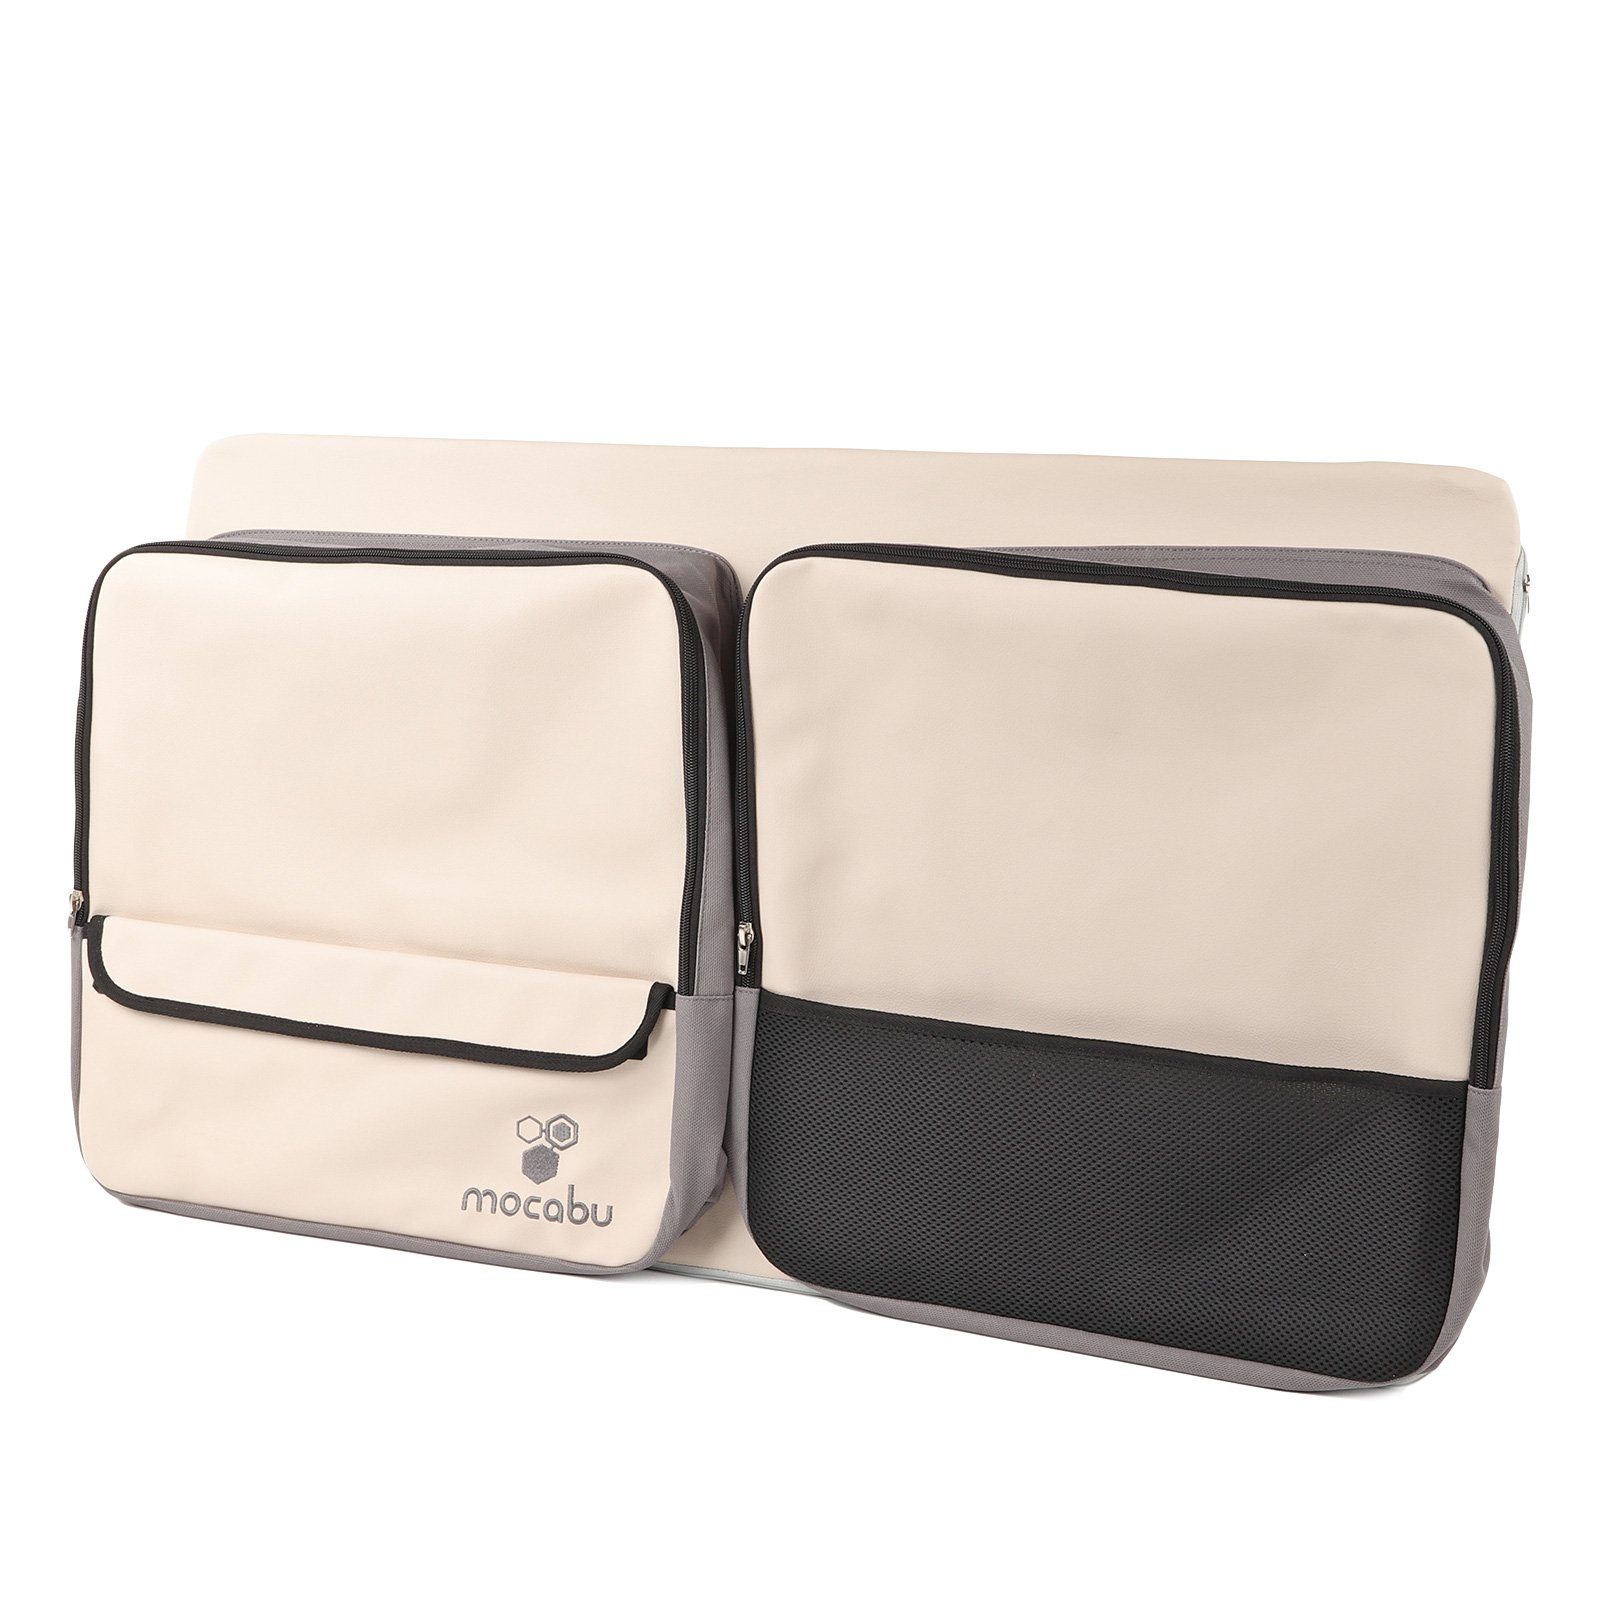 Universal Autositz Rückenlehne Kopfstütze Doppelhaken für Tasche Geldbörse  Handtaschen Rucksack